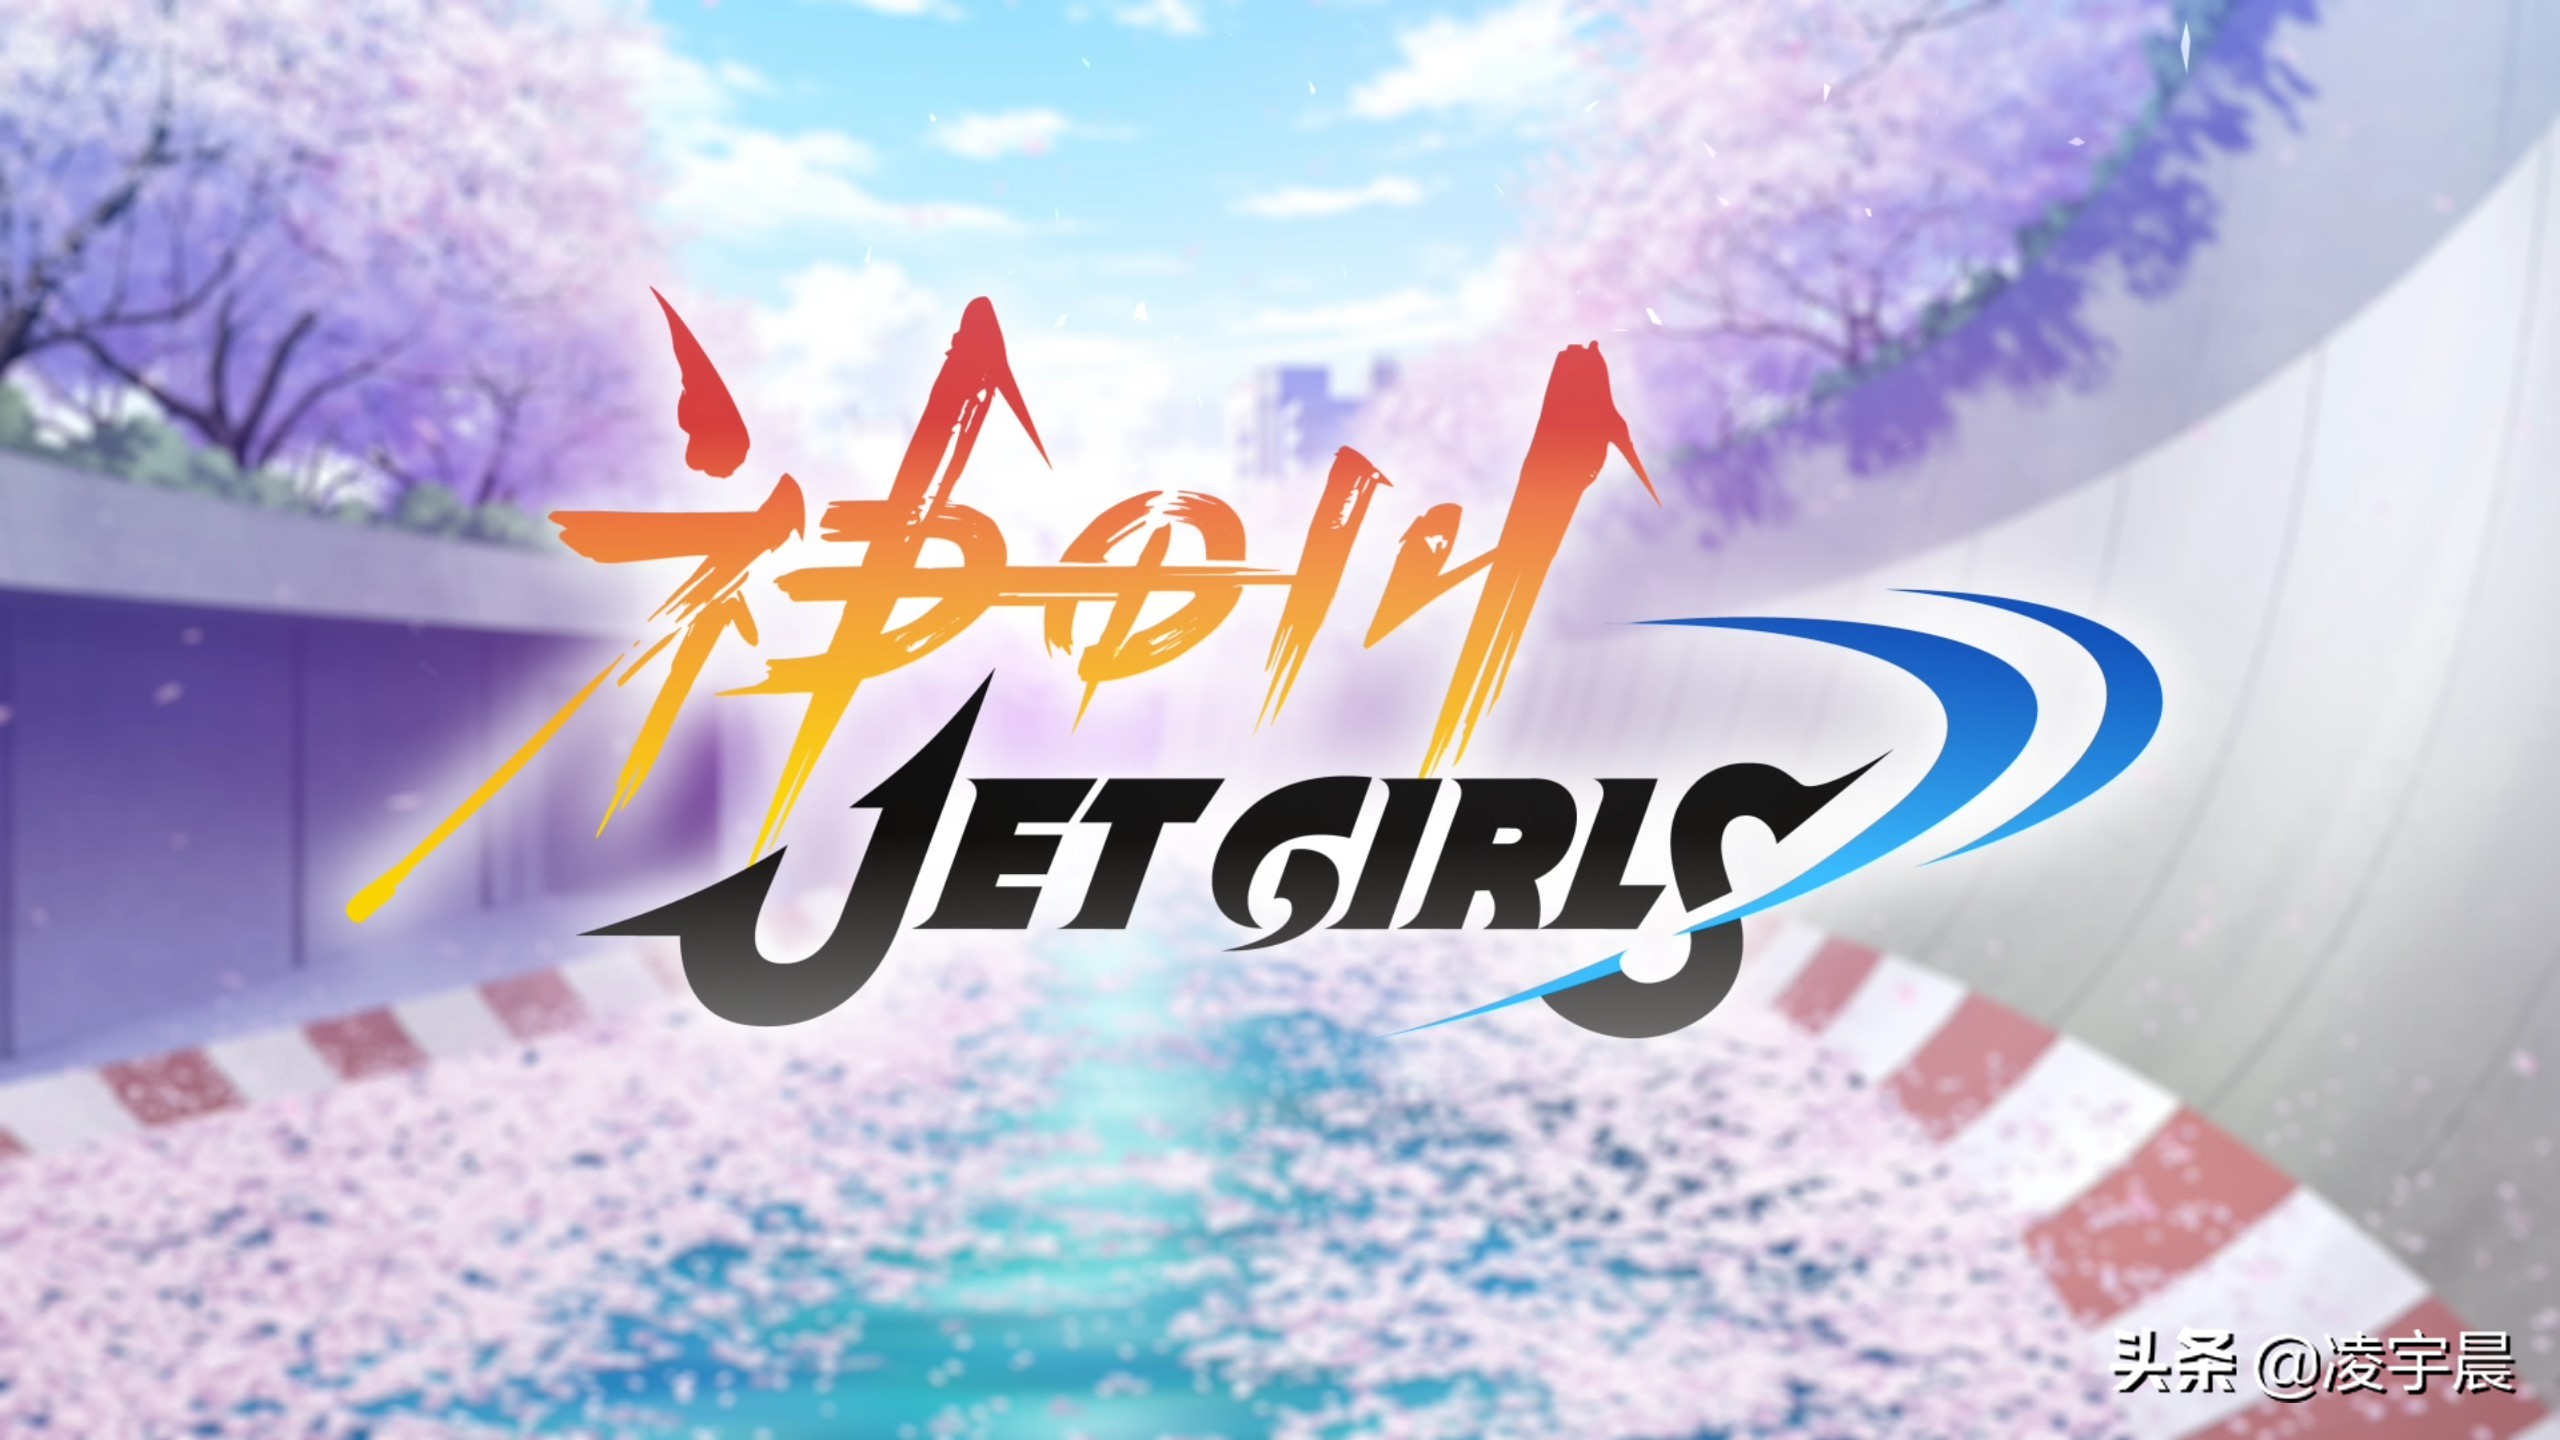 《神田川JET GIRLS》——少女们的水上青春物语